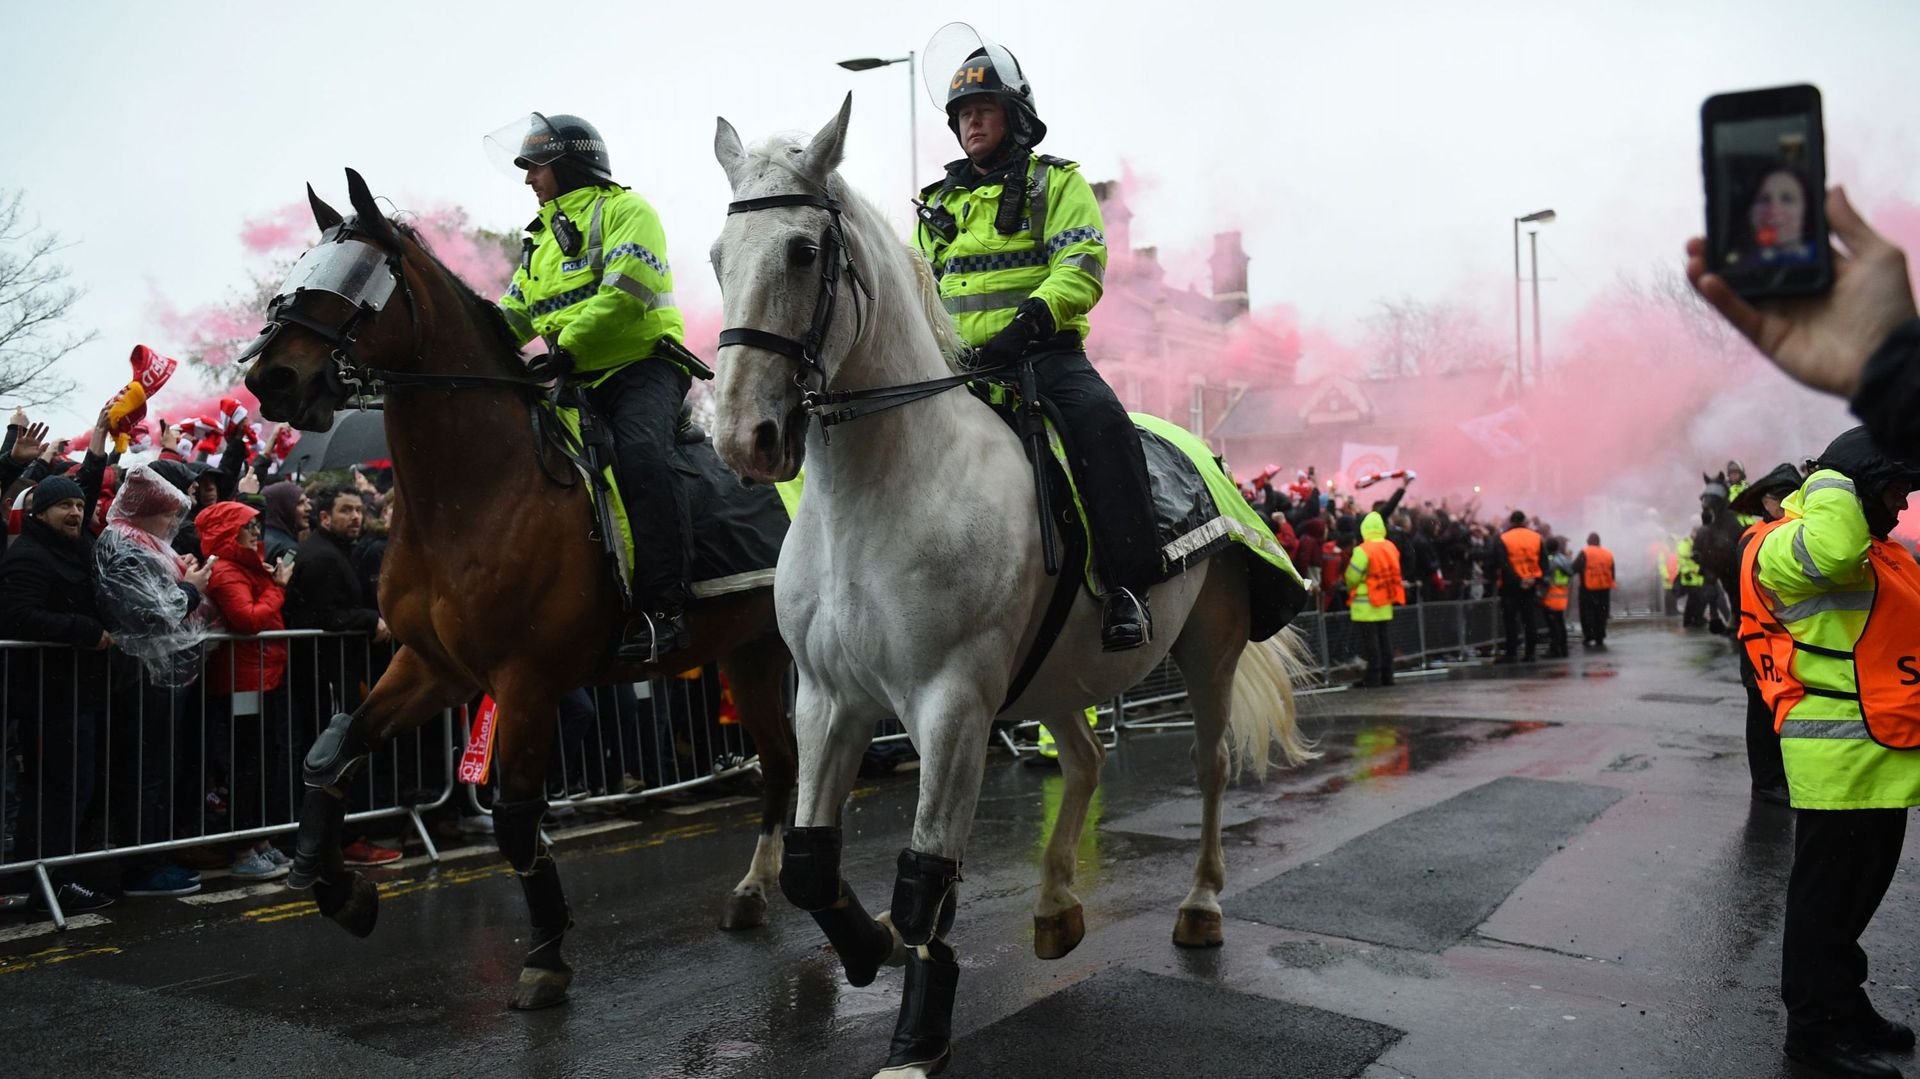 La police lance un appel à témoins après l'attaque de supporters à Liverpool